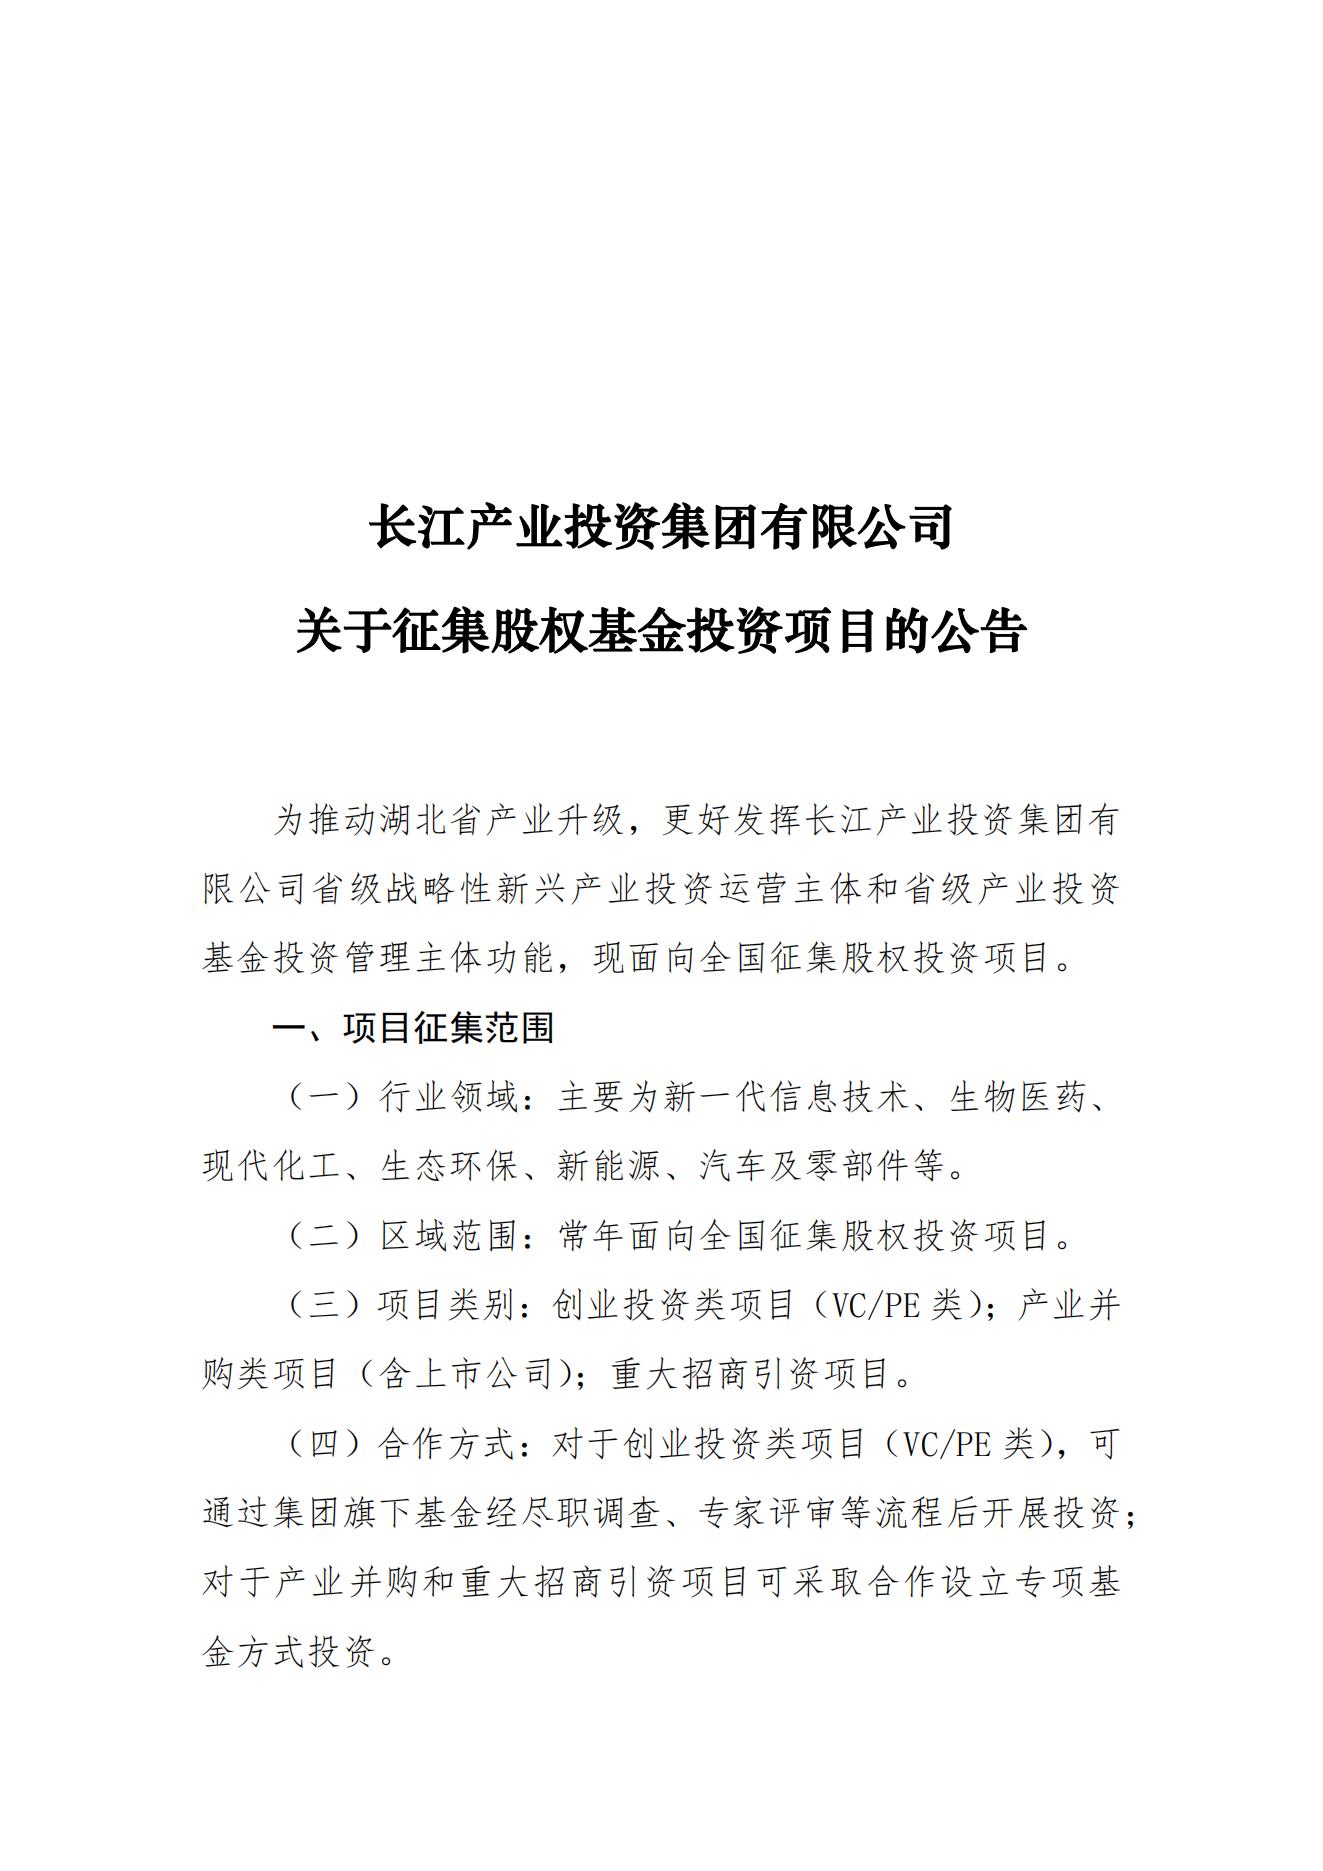 长江产业投资集团有限公司关于征集股权基金投资项目的公告_00.jpg